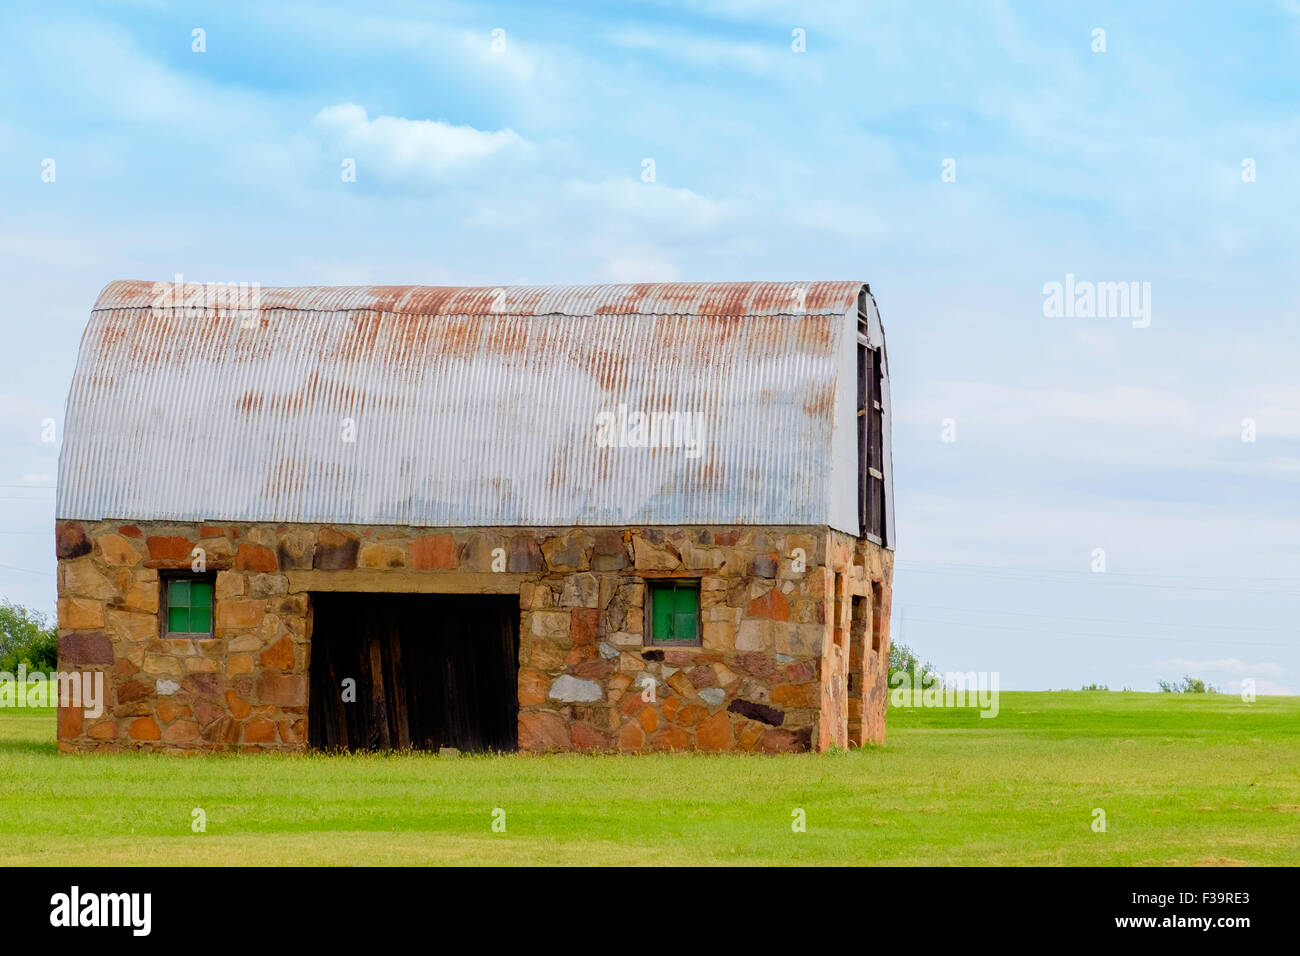 Eine Scheune mit einem rostigen Blechdach in Oklahoma, USA-Landschaft. Stockfoto